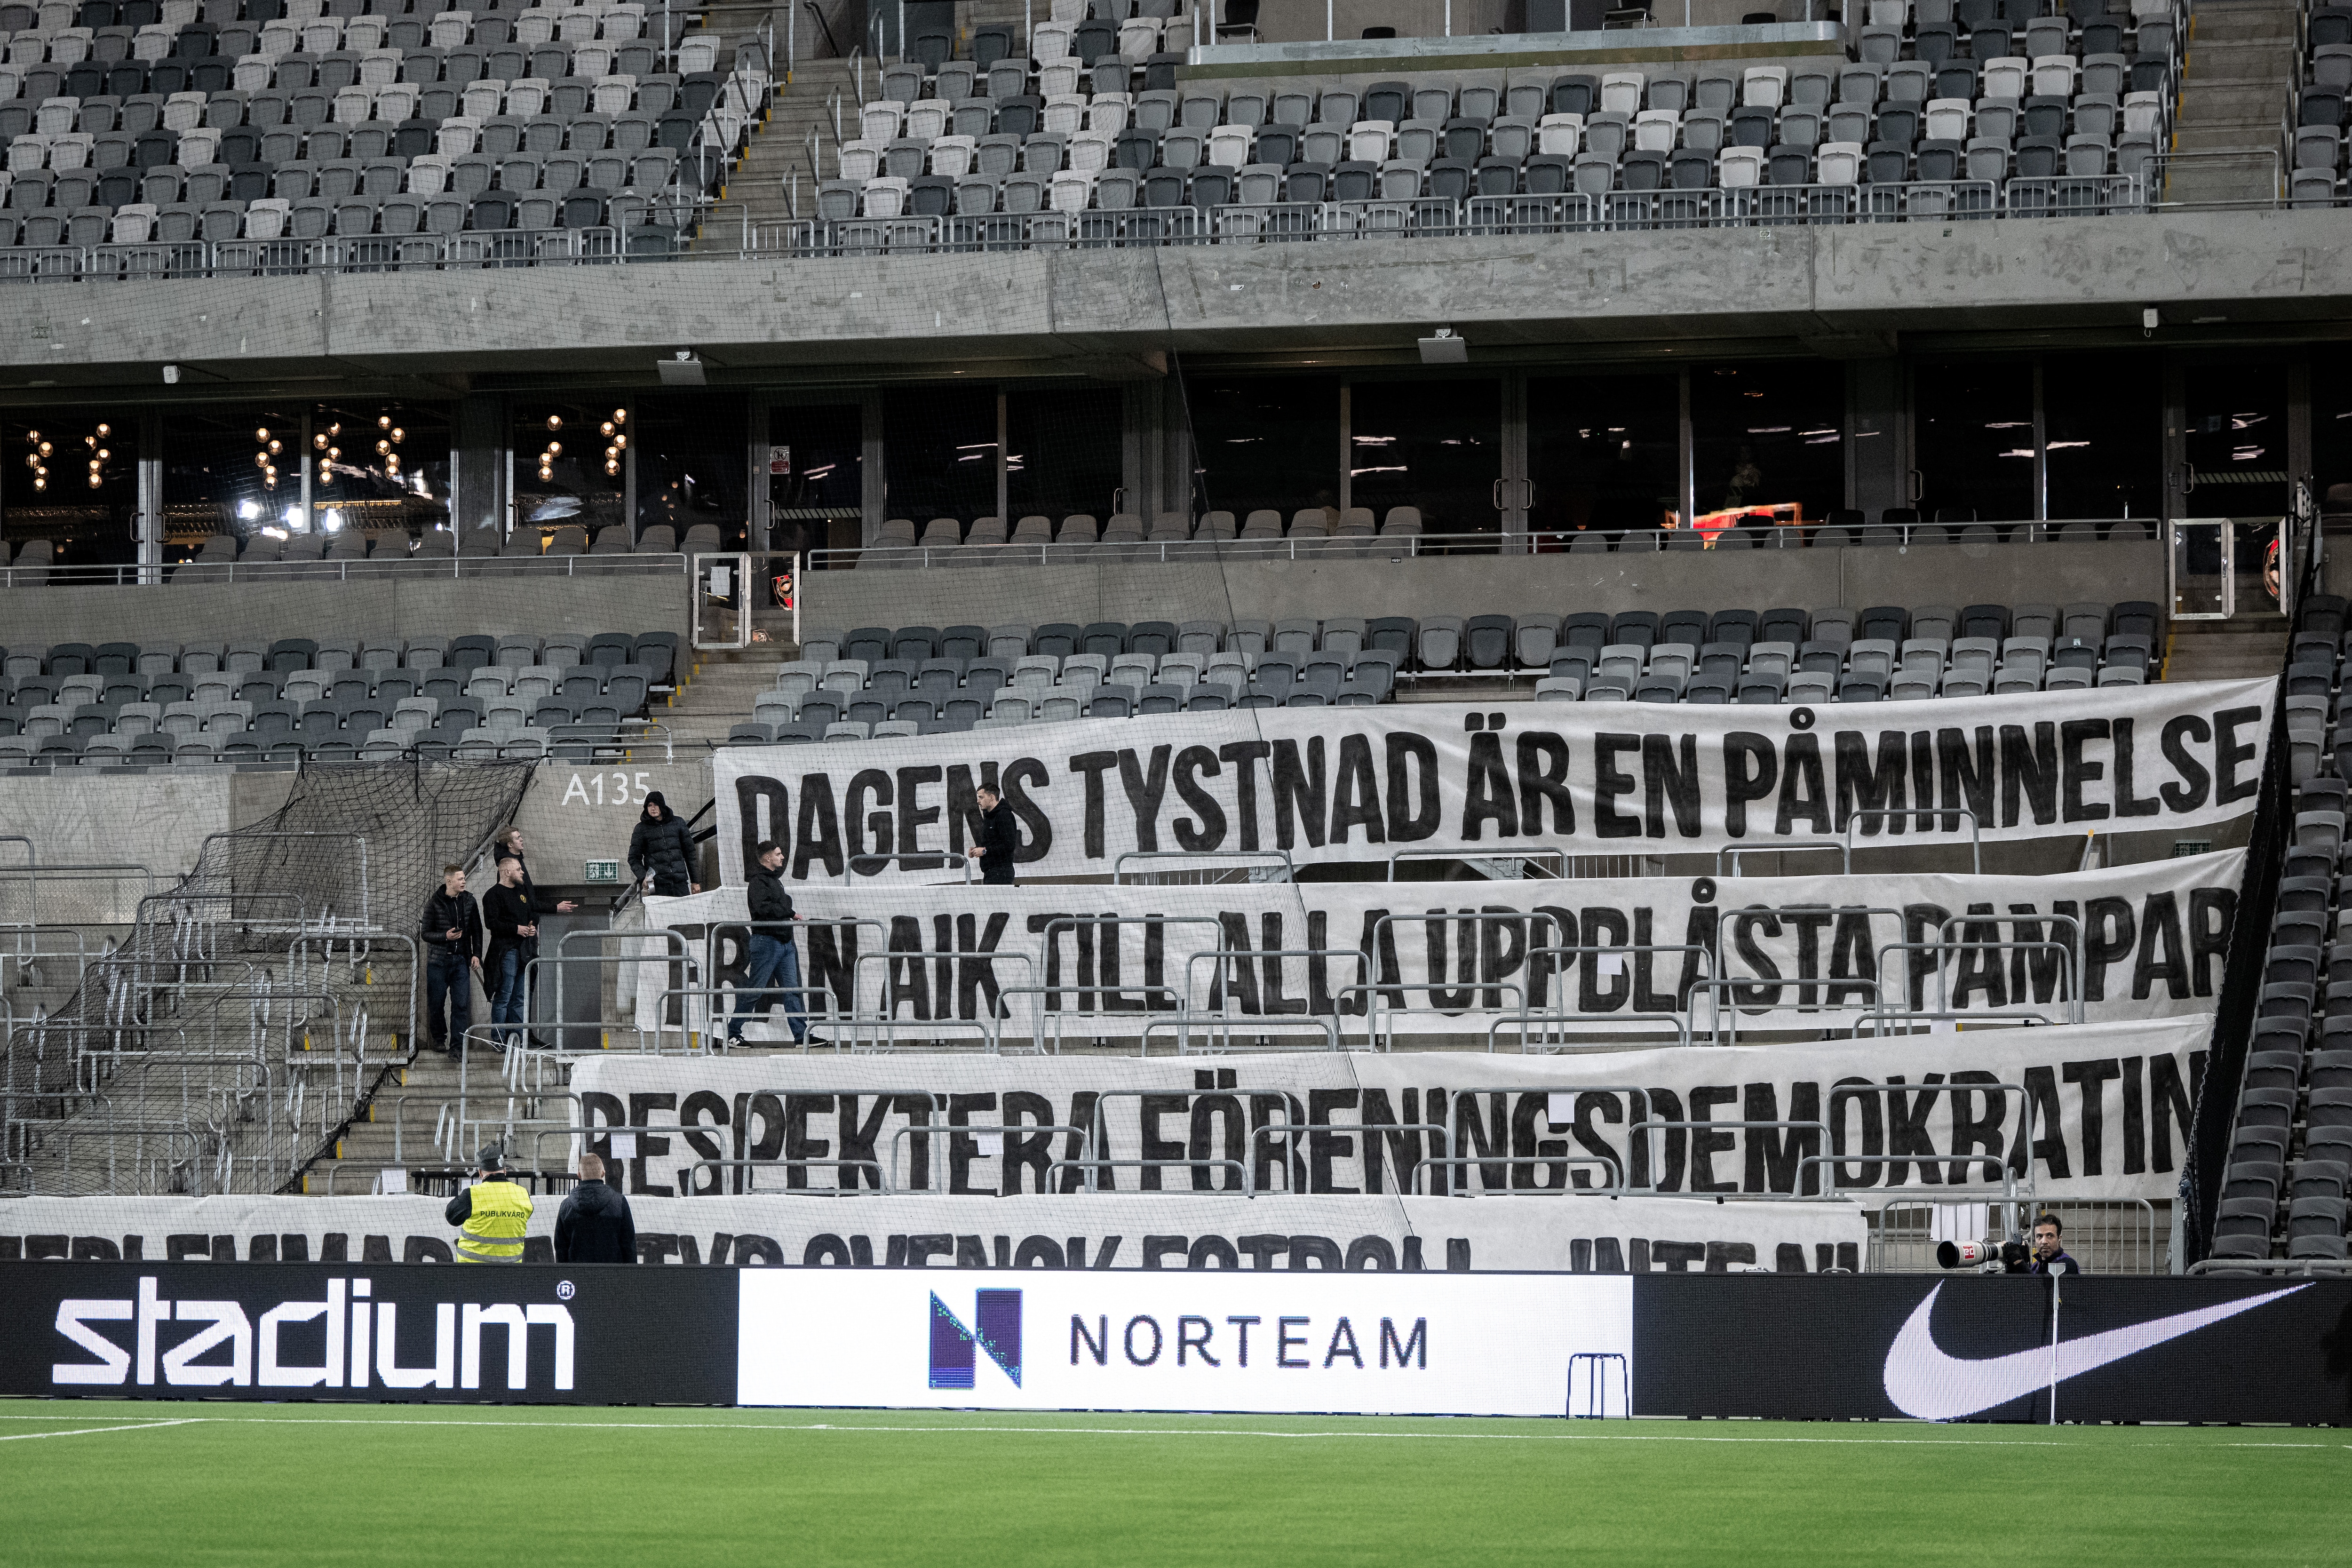 Se AIK:s tysta protest: Uppblåsta pampar